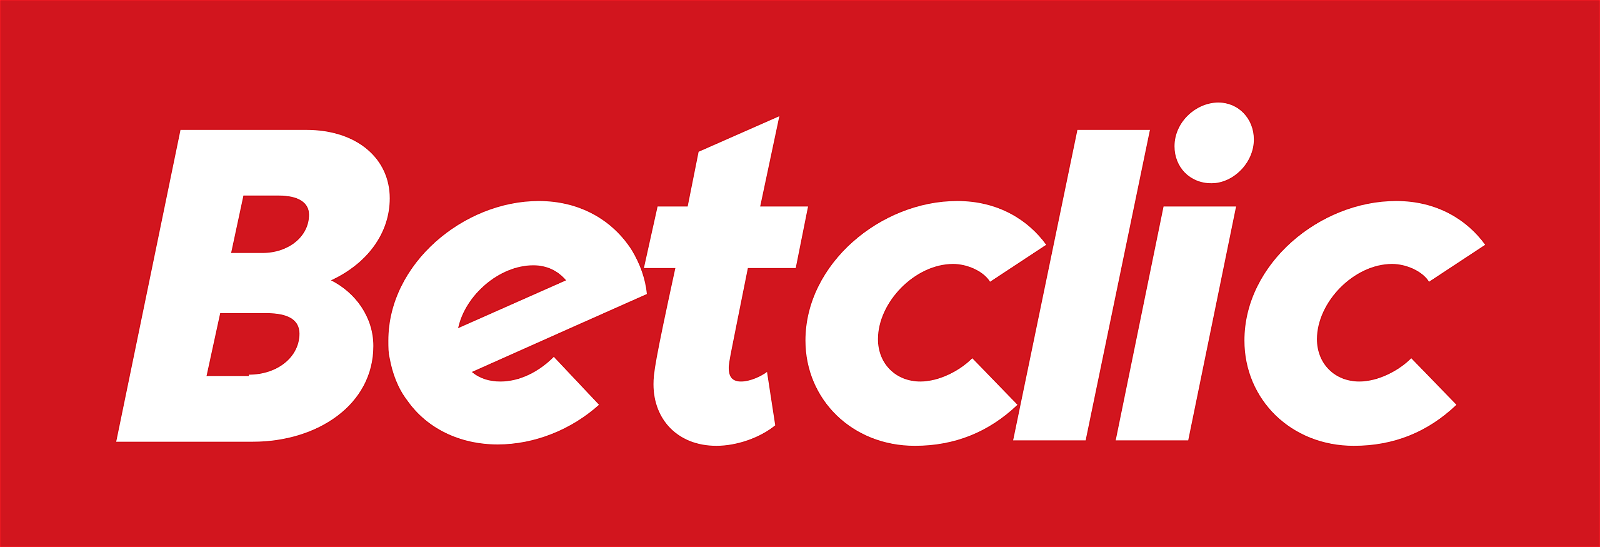 Logo Betclic : plateforme de paris sportifs.